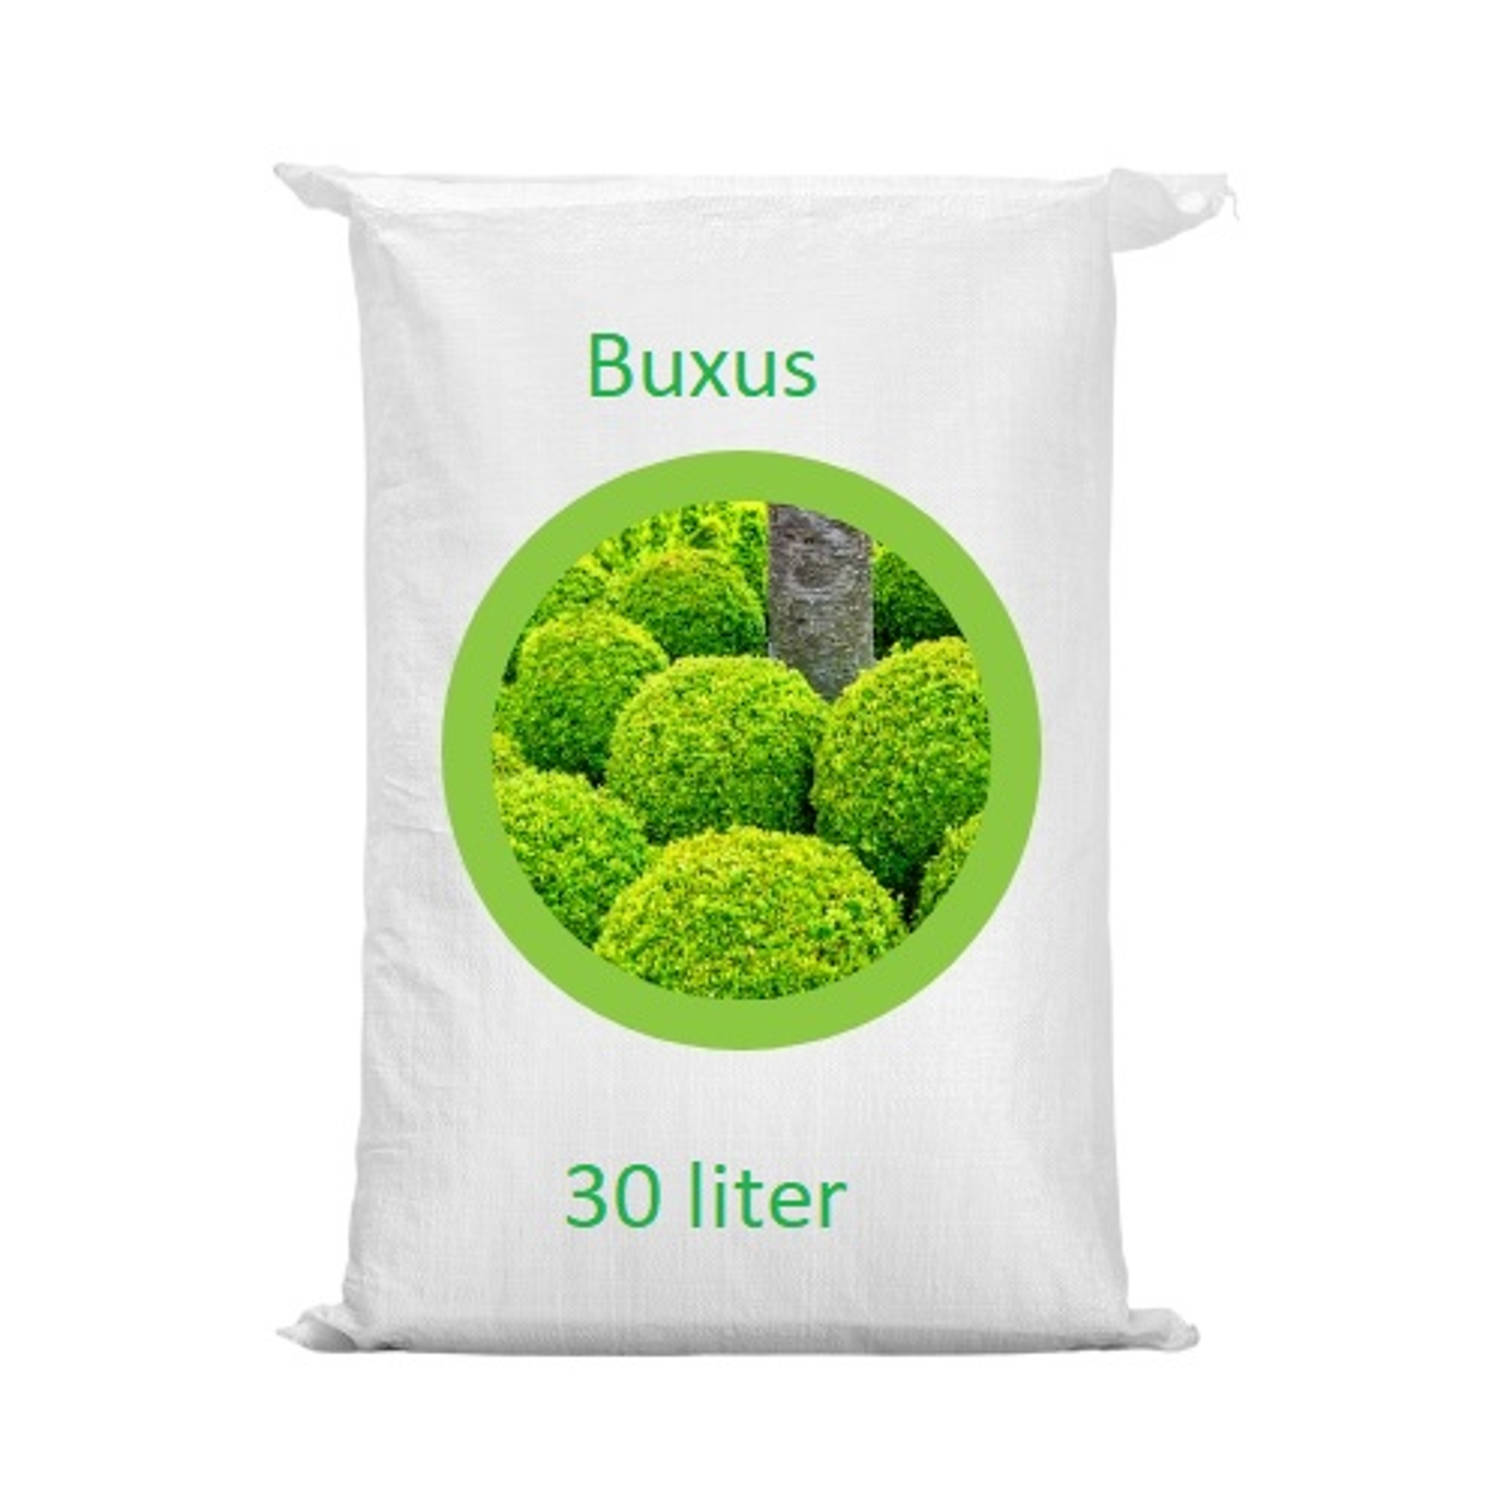 Warentuin Mix - Buxus grond aarde 30 liter